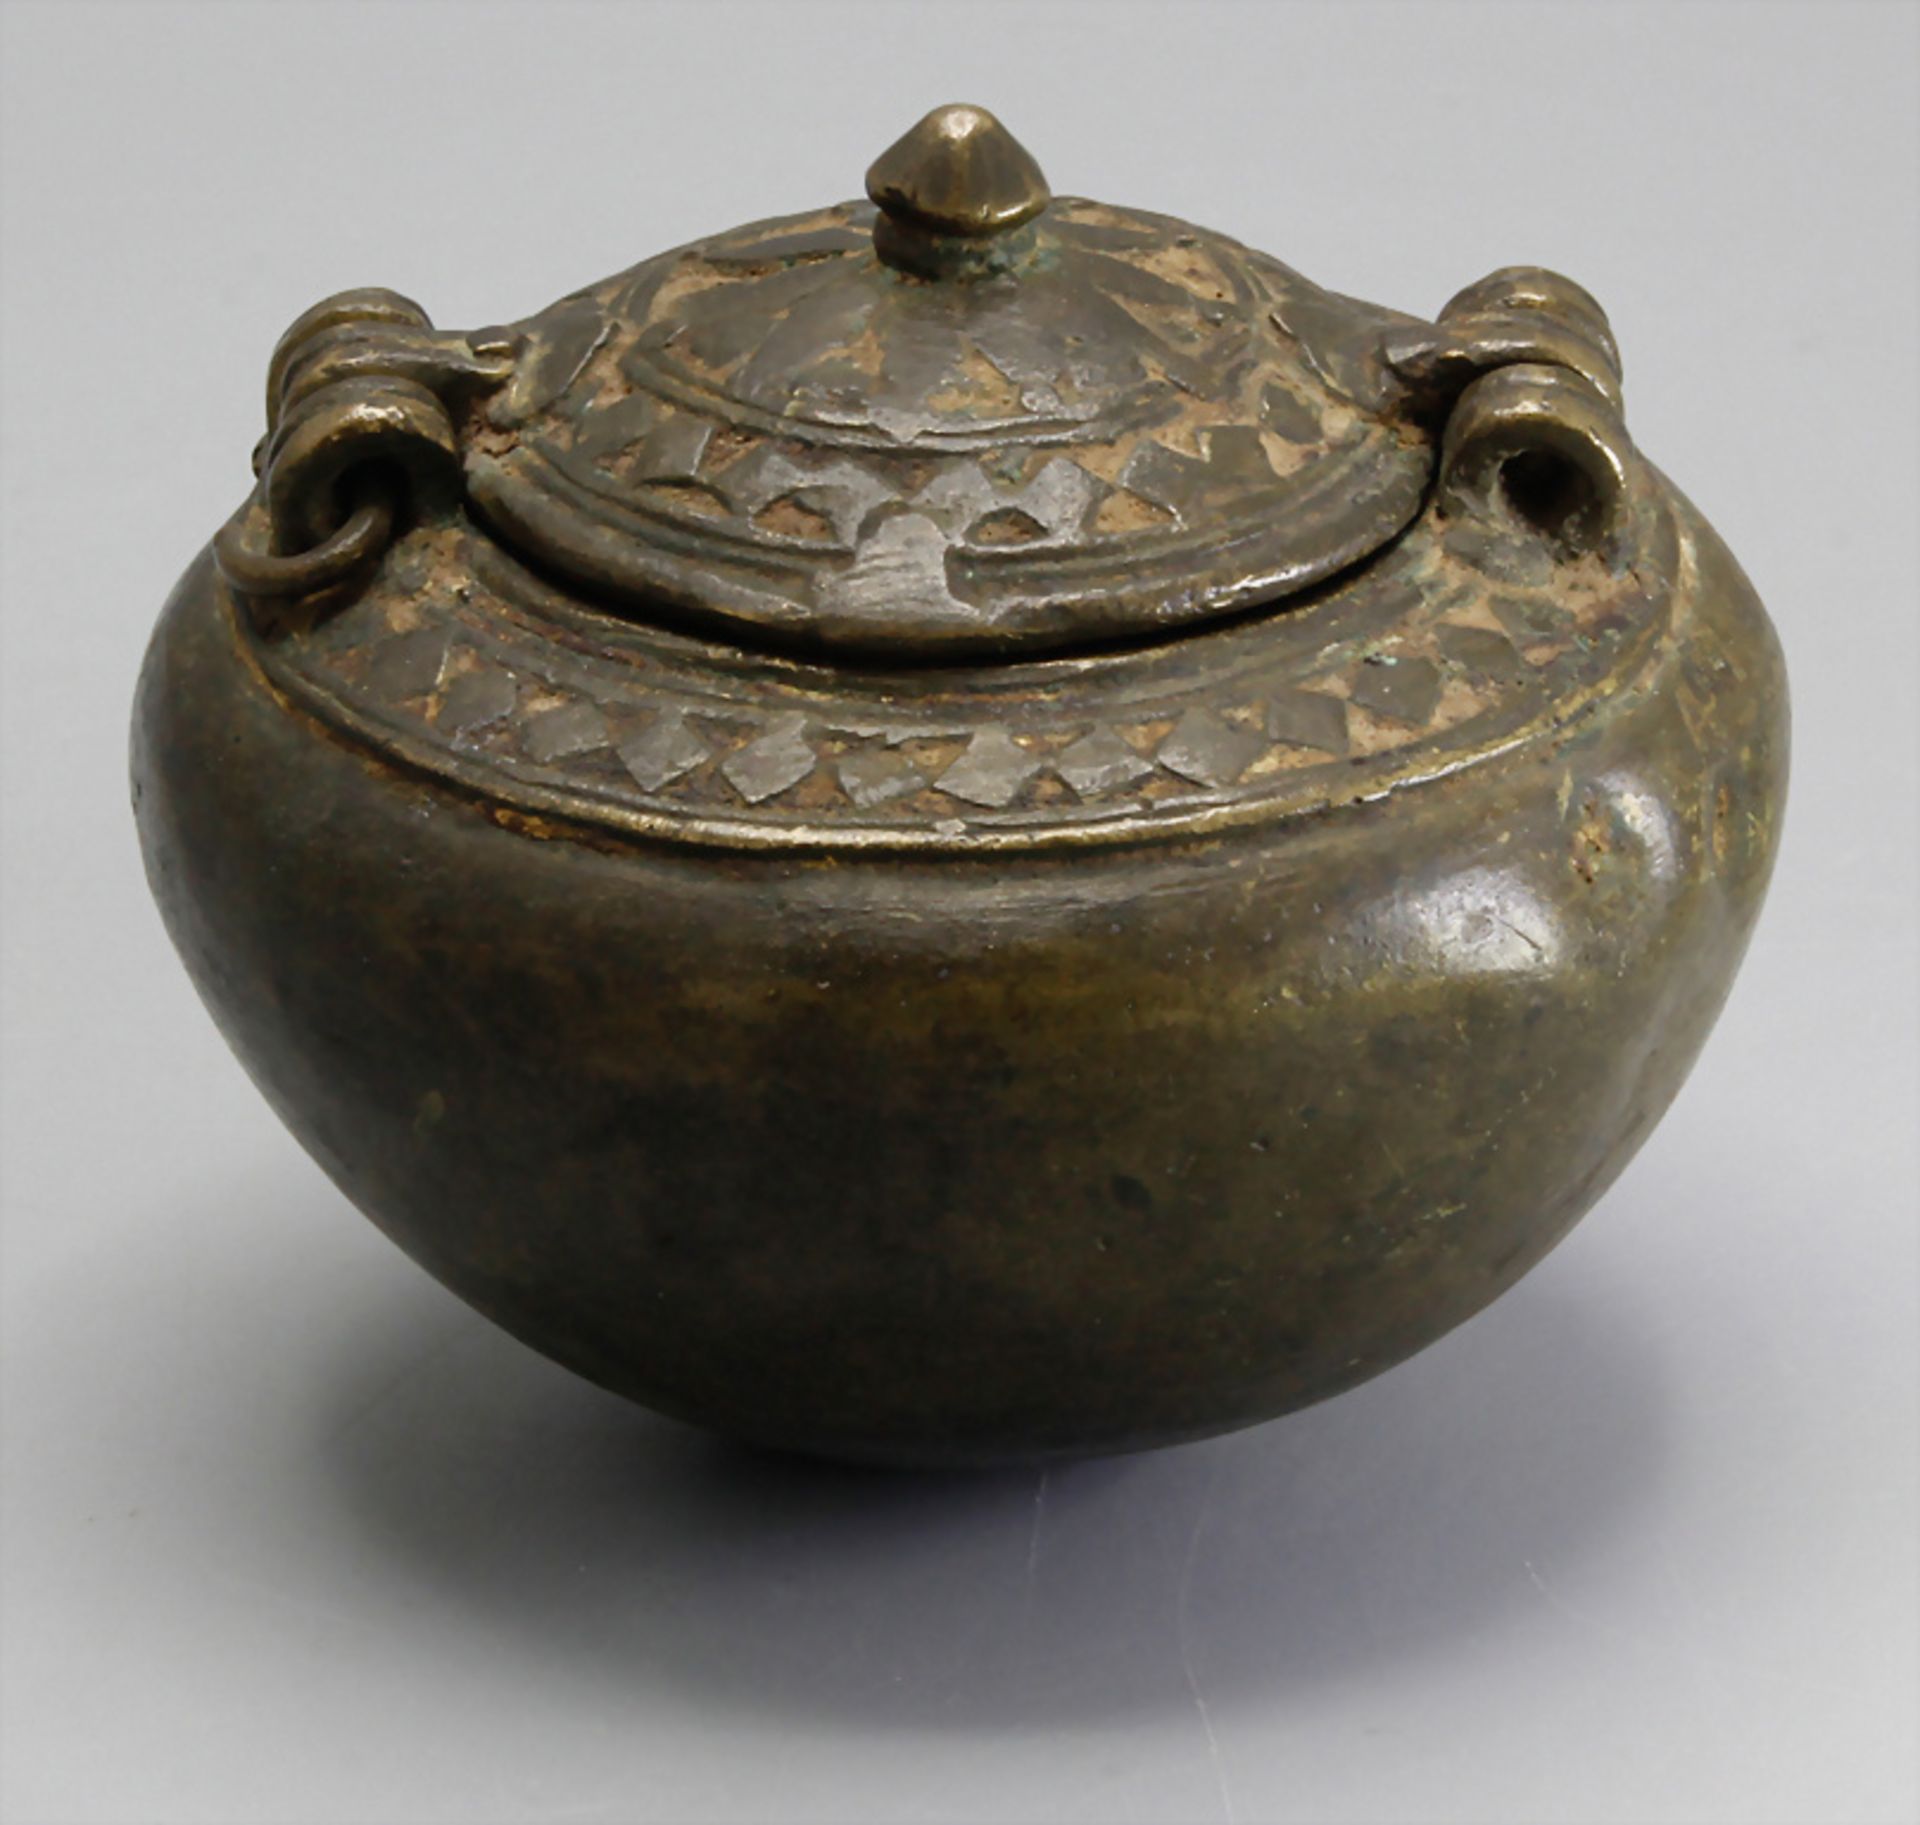 Bronze Räuchergefäß mit Deckel / A bronze lidded incense burner